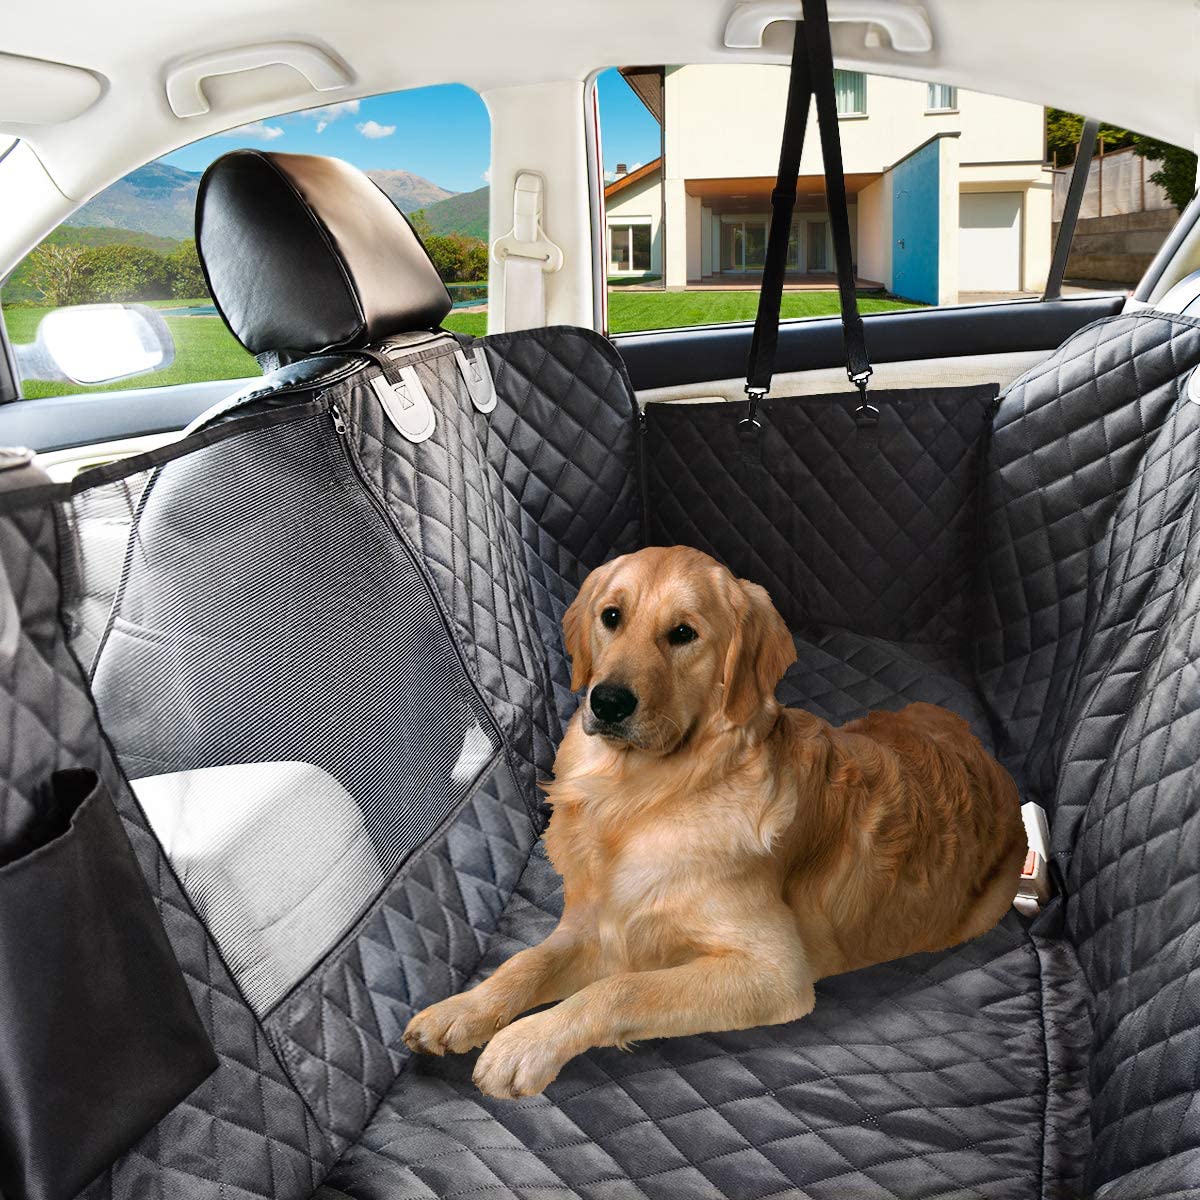 Dog Car Seat Cover Waterdicht Hond Auto Deken Matten Case Voor Achter Back 2 In 1 Voor Kofferbak Hond Auto protector Hond Hangmat Auto